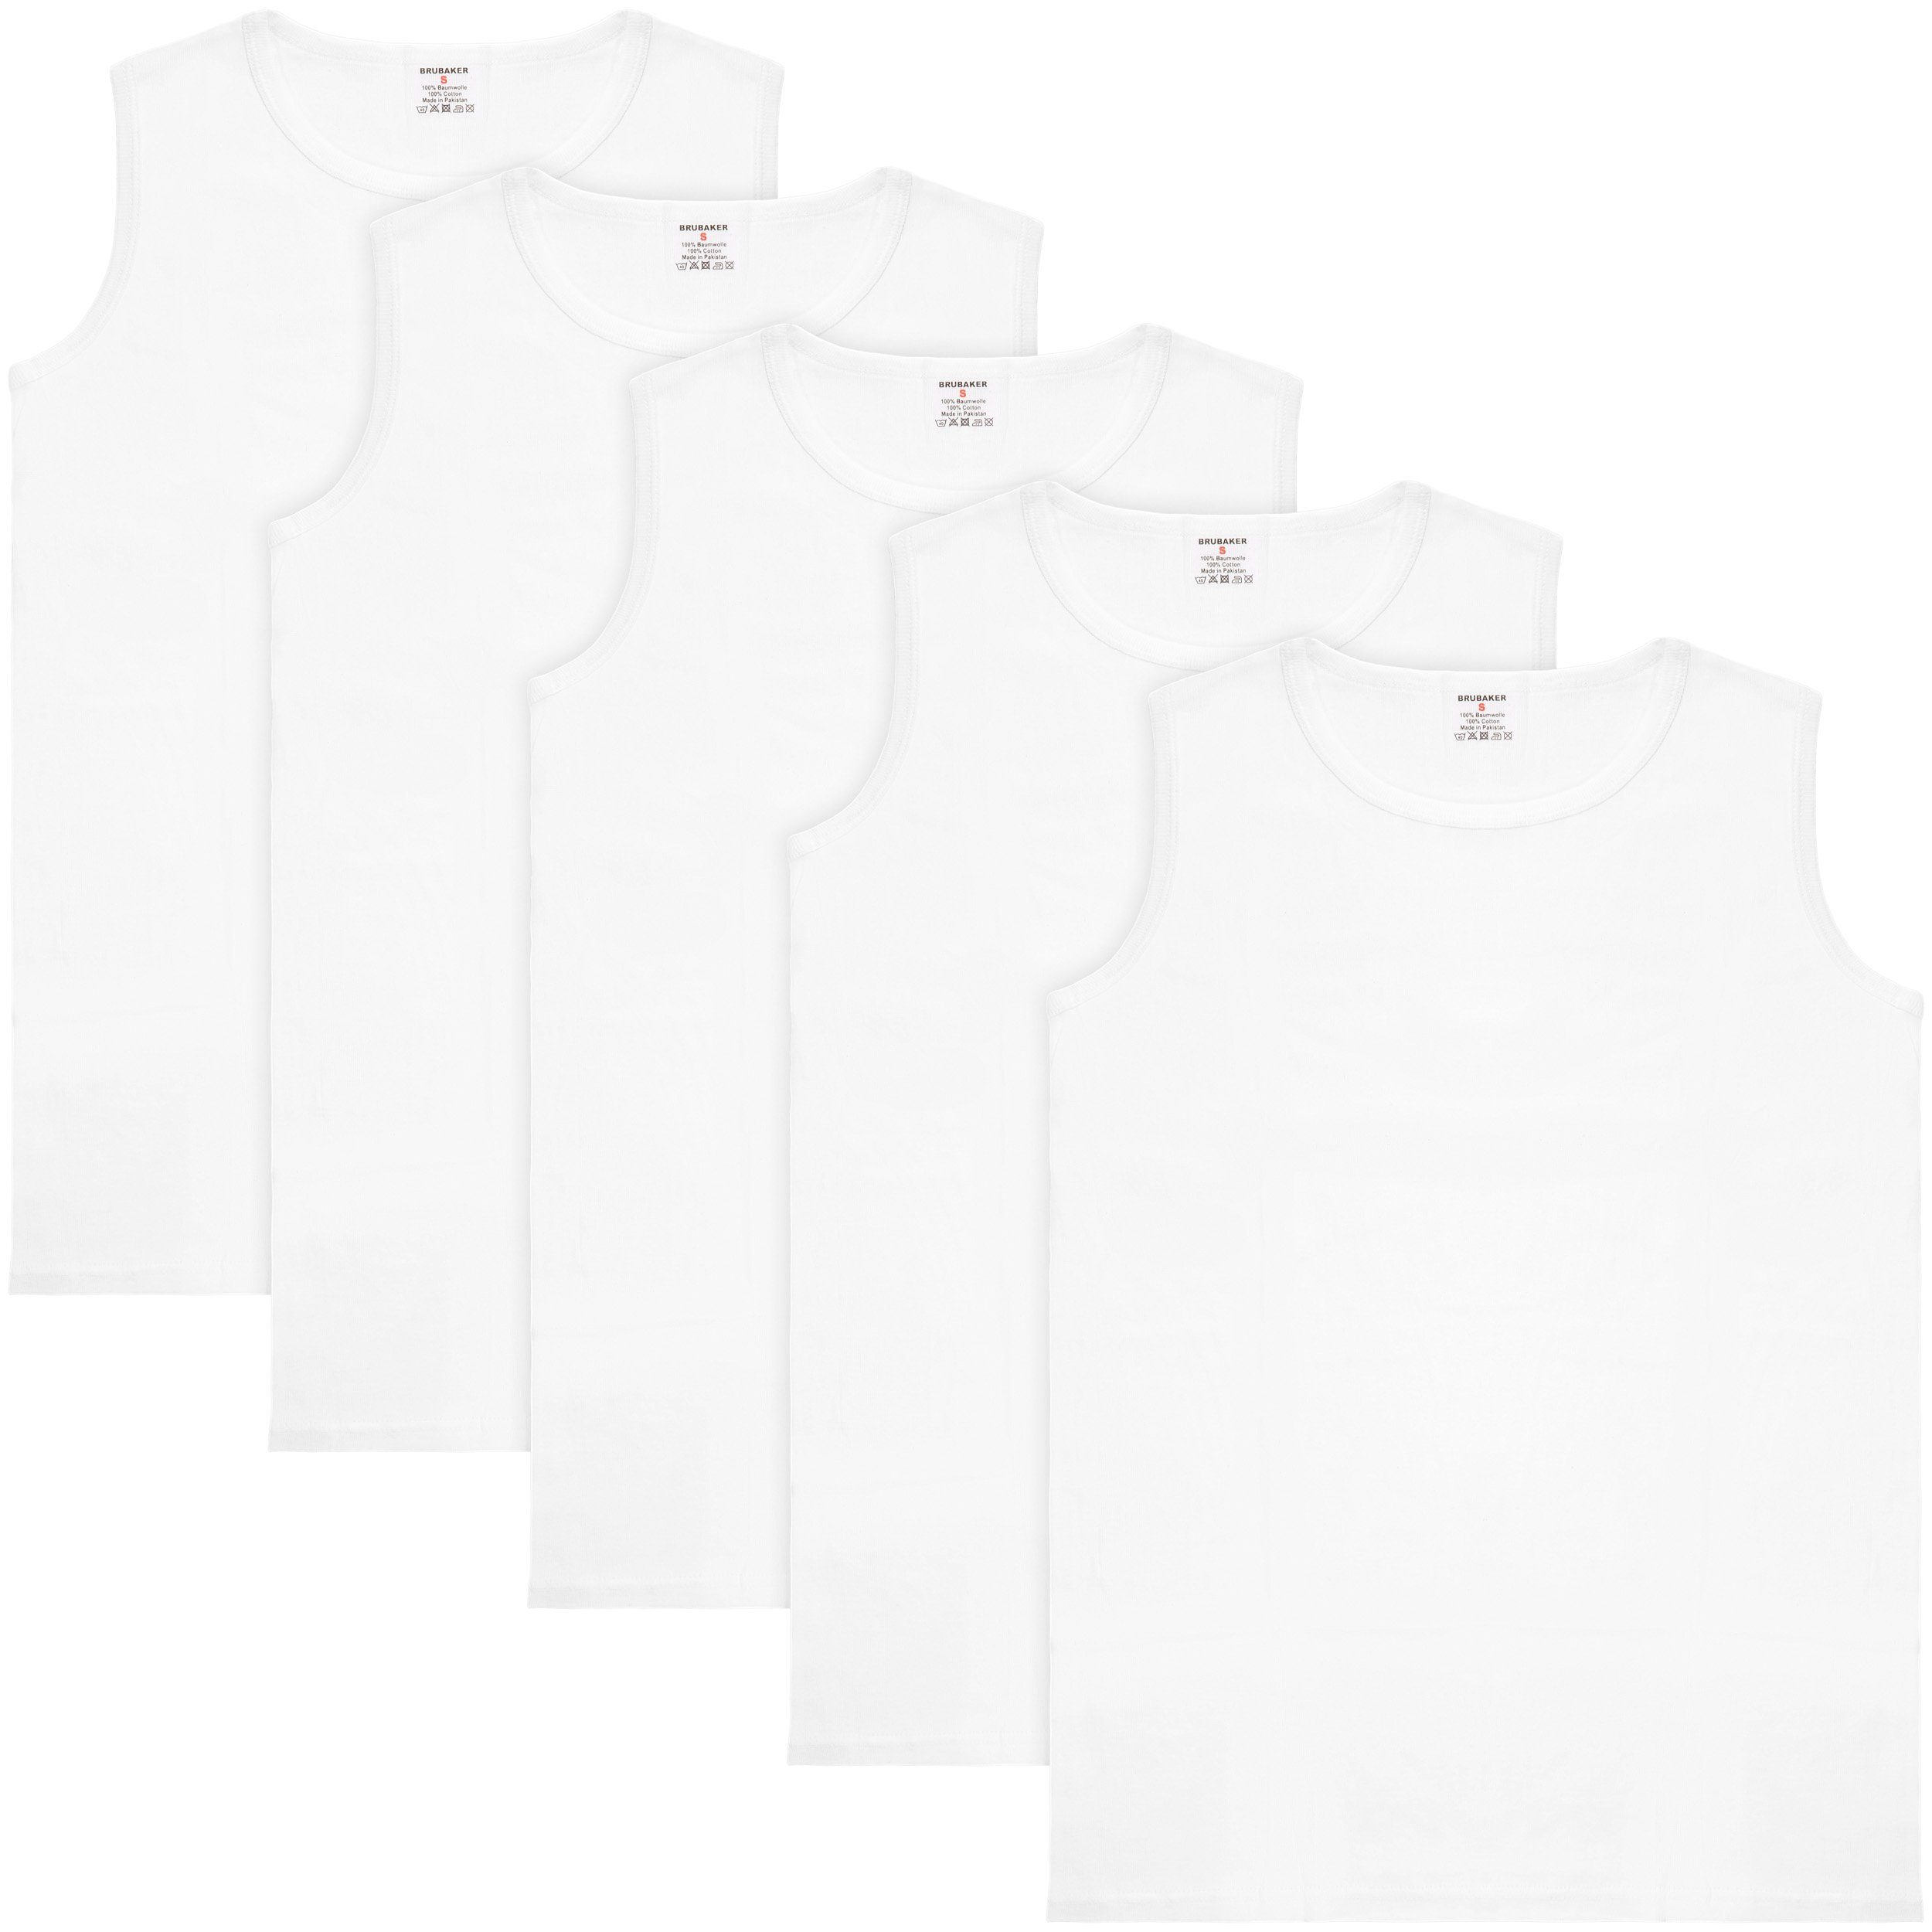 BRUBAKER Muskelshirt (5er-Pack) Unterhemd Tank Schlichtes mit Herren Weiß Top Lang Baumwolle hochwertiger Männer, für Rundhals Ausschnitt (glatt), Extra Tanktop aus Basic Achselshirt